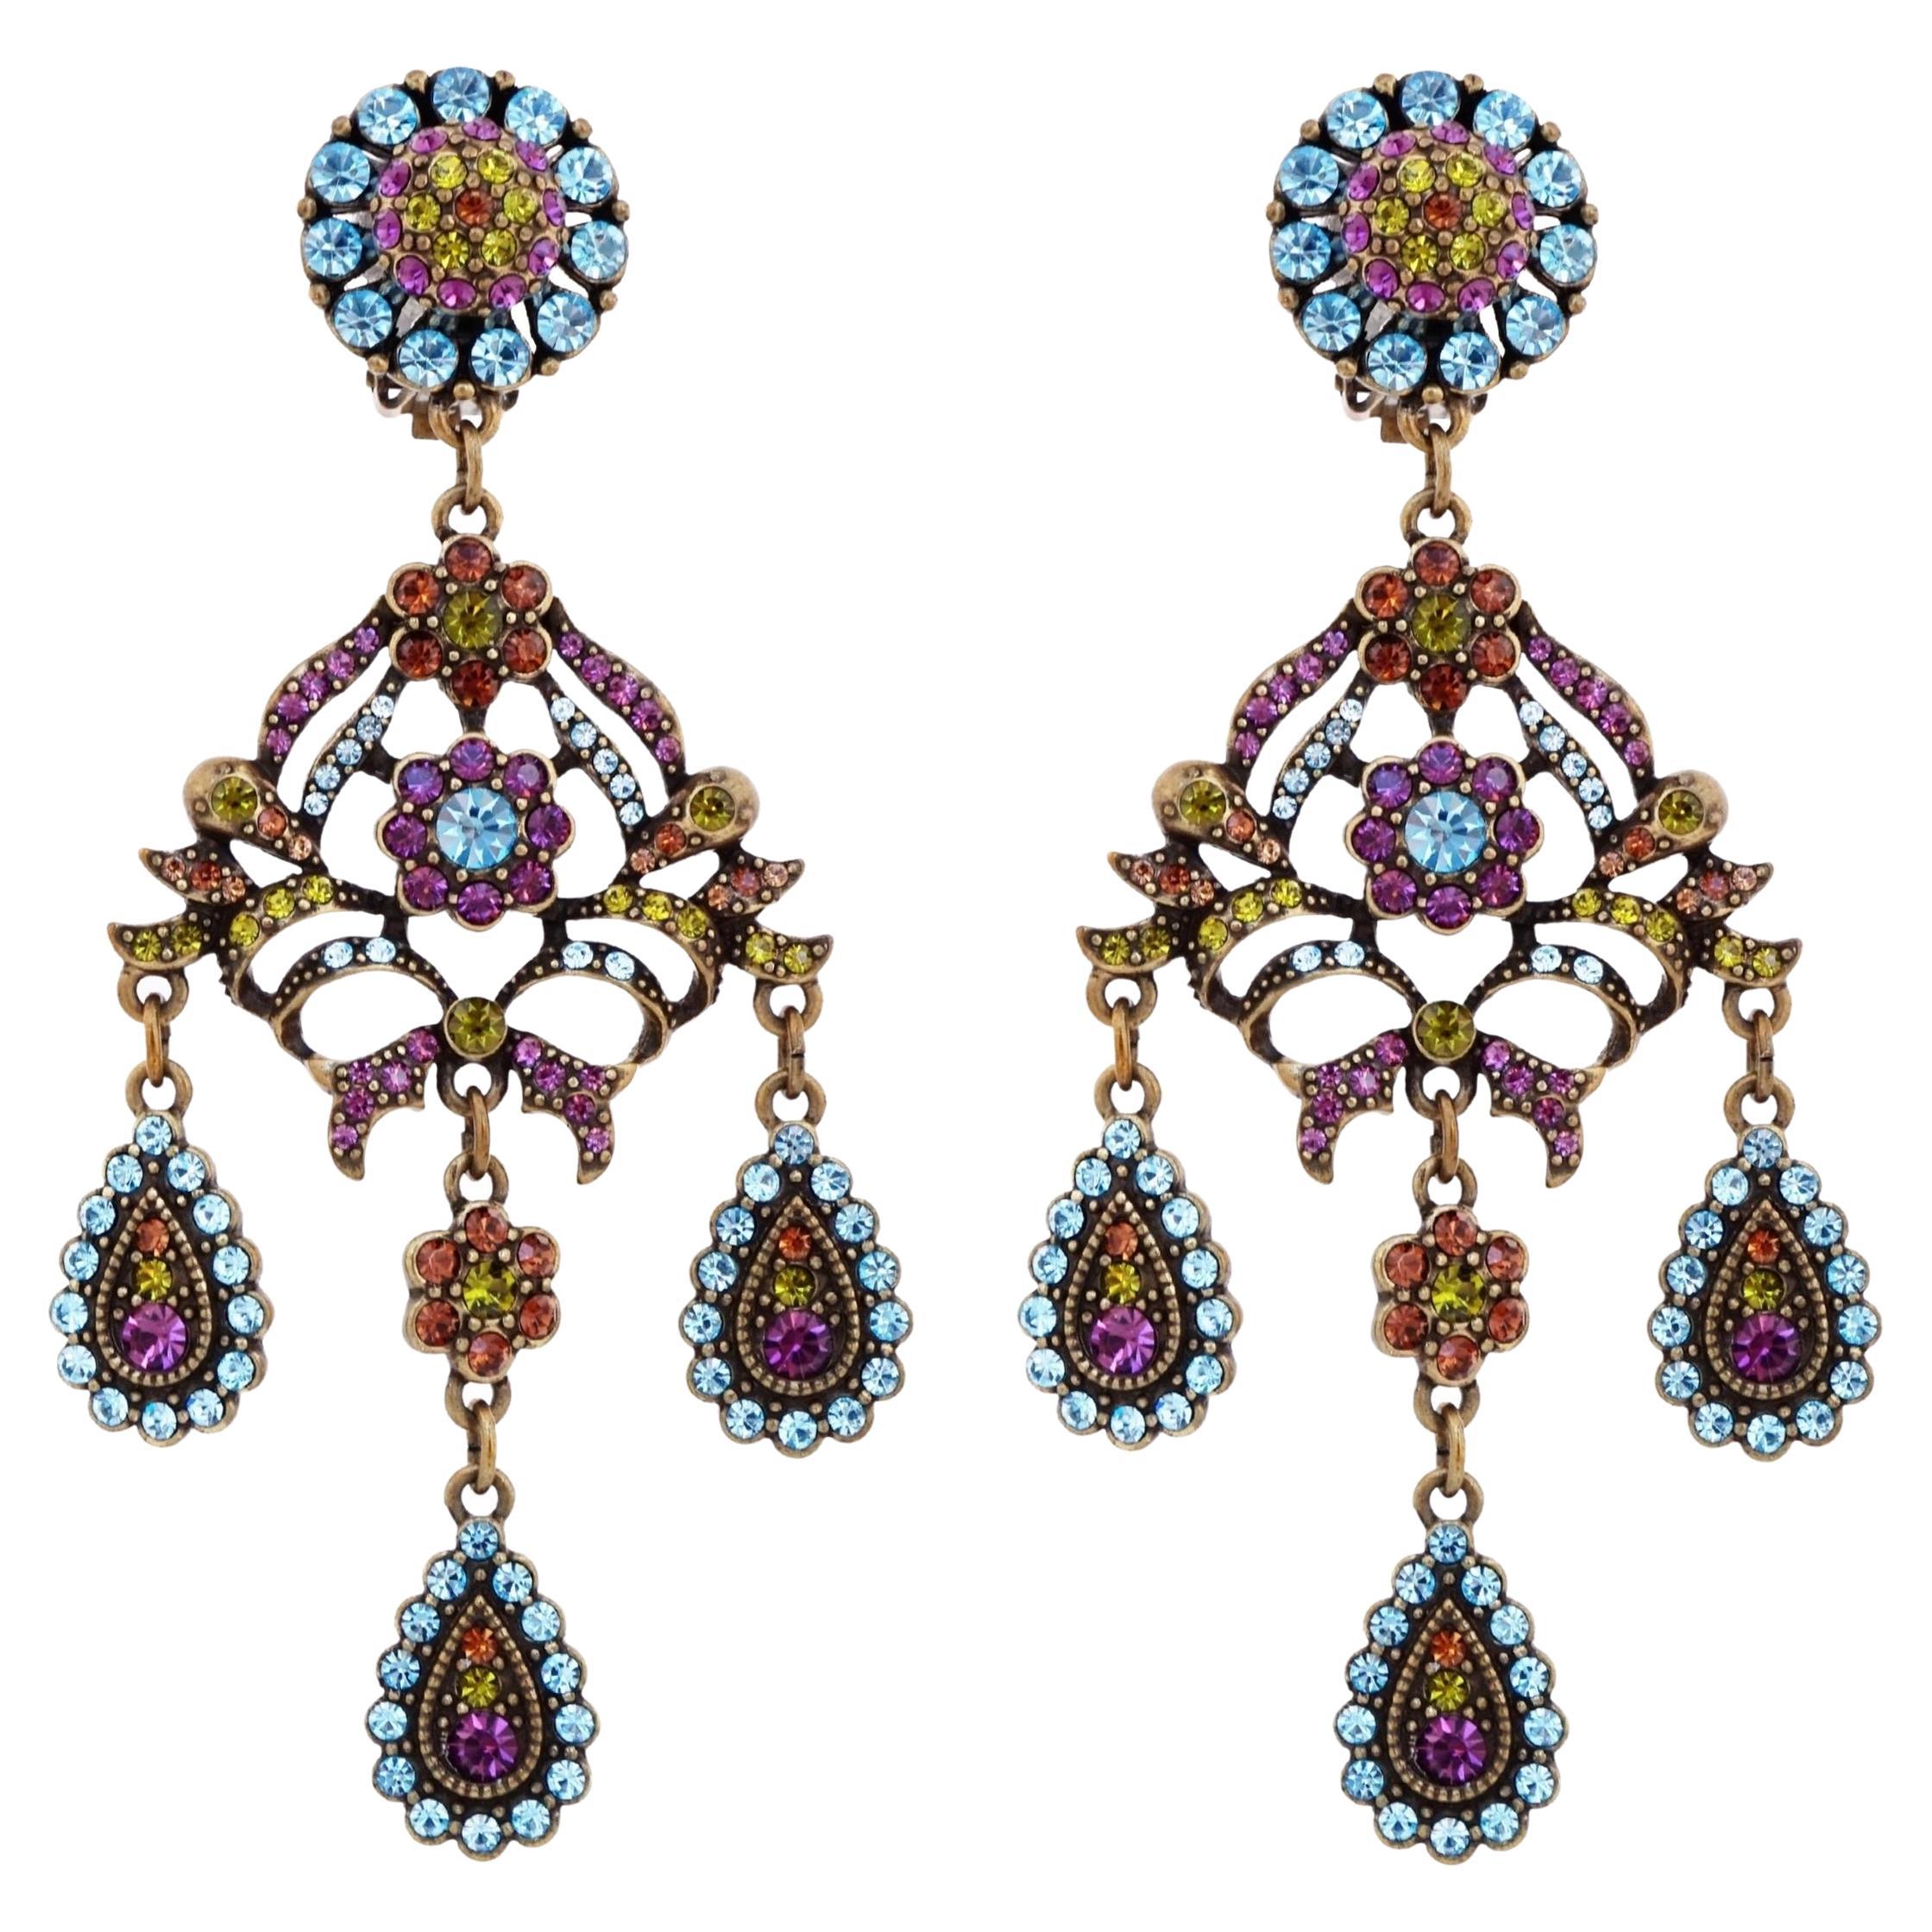 Chandelier Earrings With Swarovski Crystal Floral Motif By Heidi Daus